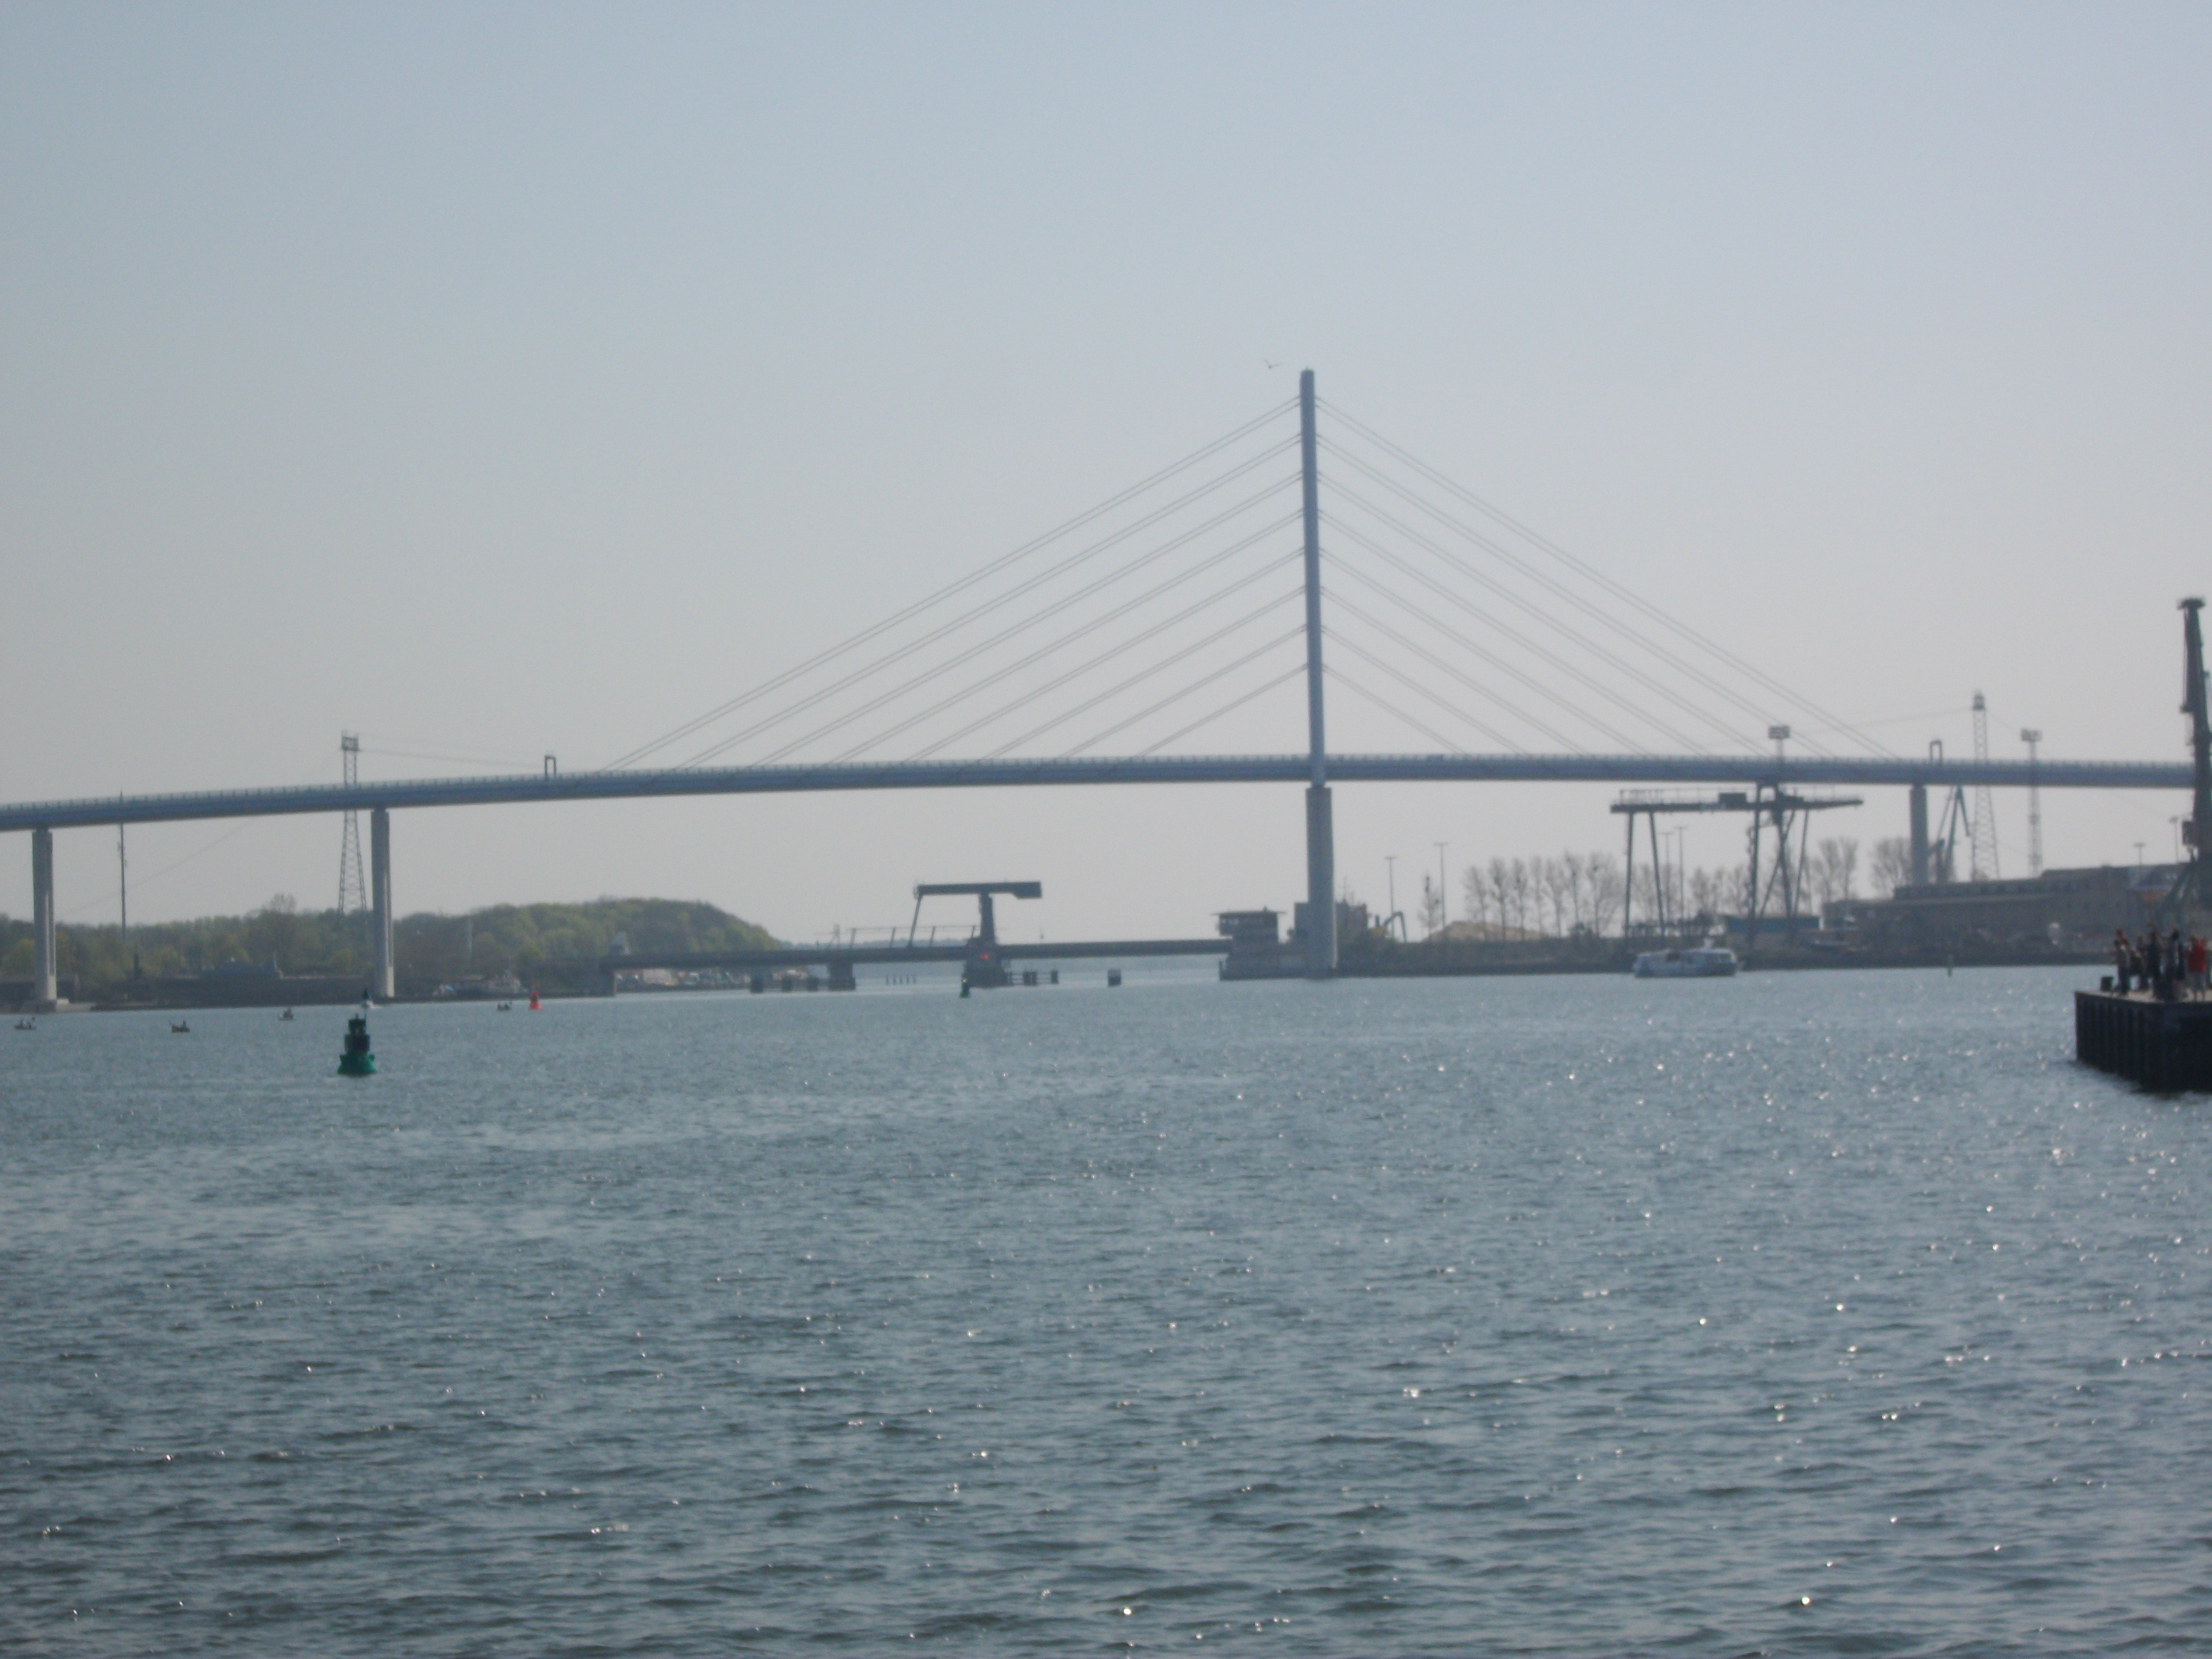 Die Rügenbrücken (auch Strelasundquerung) liegen als Verbindung zwischen dem vorpommerschen Festland bei Stralsund zur Insel Rügen über den Strelasund. Die Querung ist ca. 4100 m lang und gehört zu Deutschlands längsten Brückenverbindungen.
